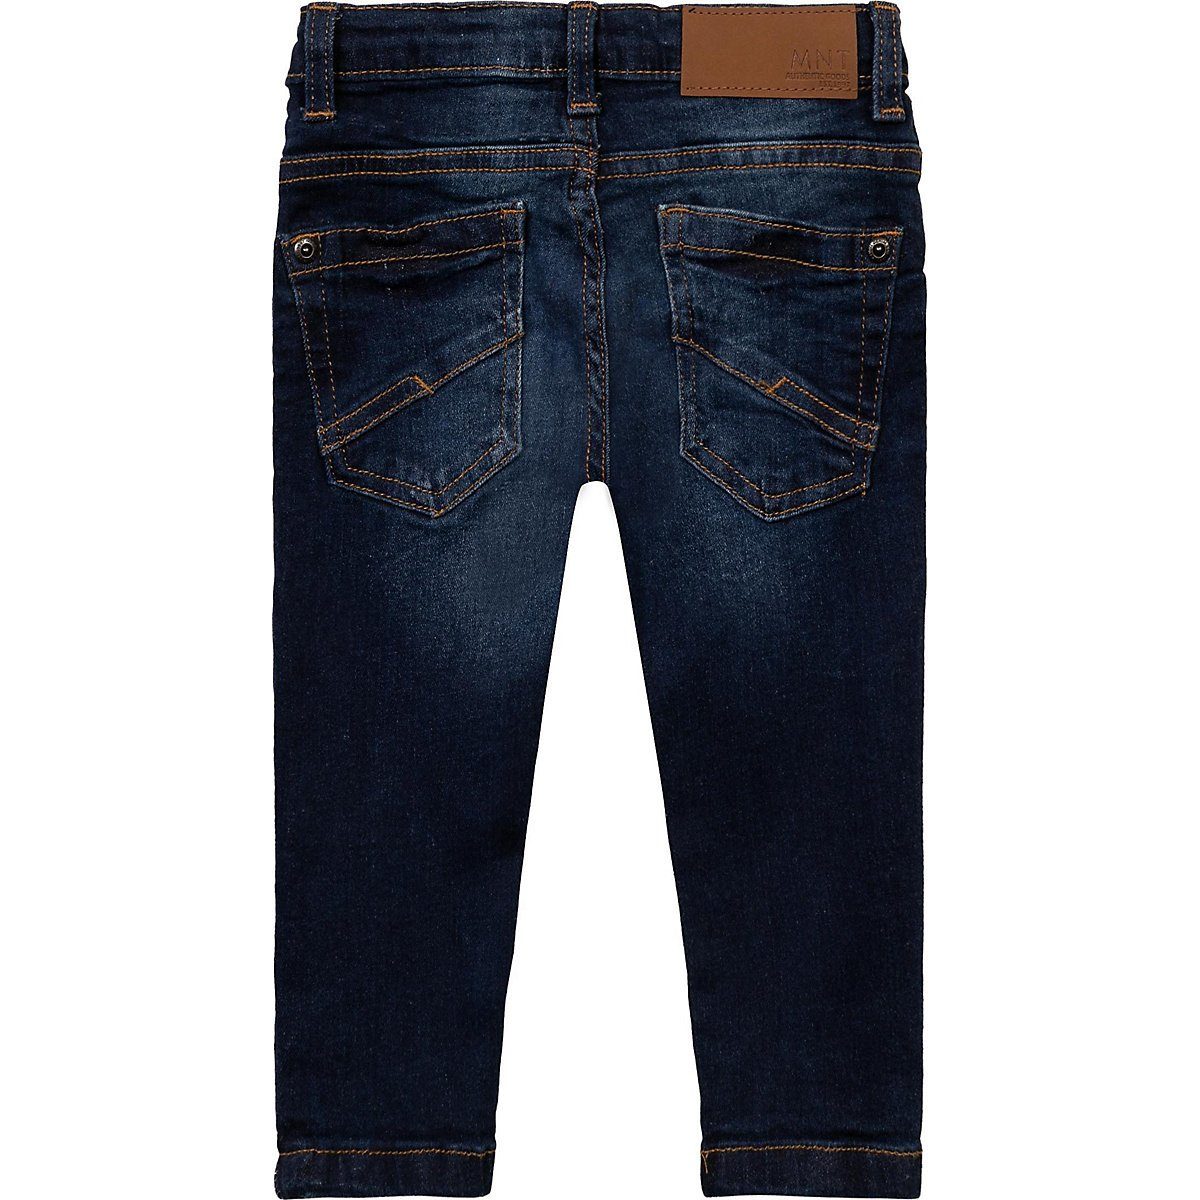 Kinder Teens (Gr. 128 - 182) MINOTI Regular-fit-Jeans Jeanshose für Jungen